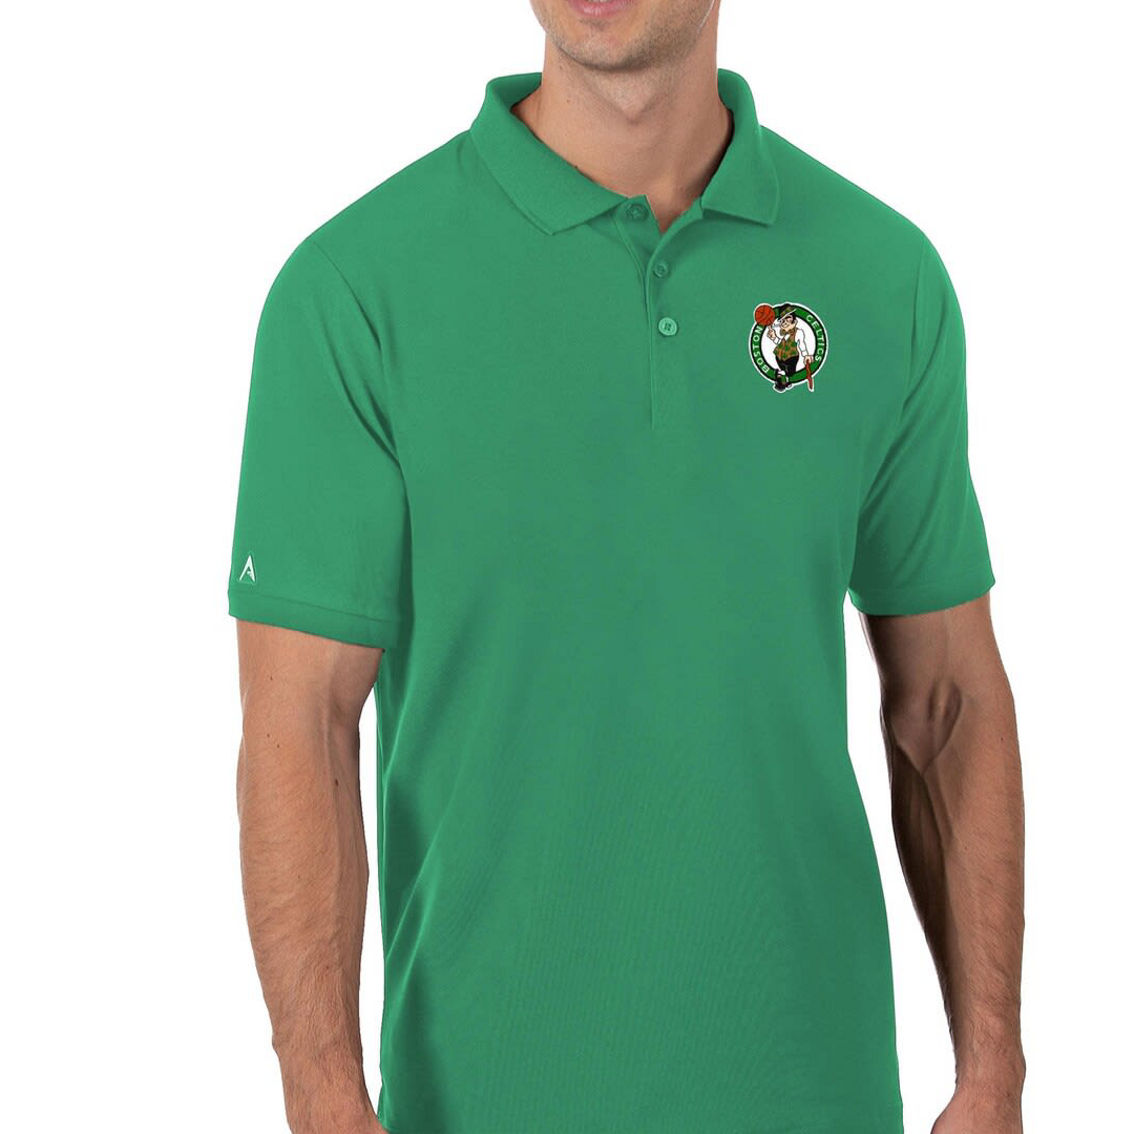 Antigua Men's Green Boston Celtics Legacy Pique Polo - Image 2 of 2